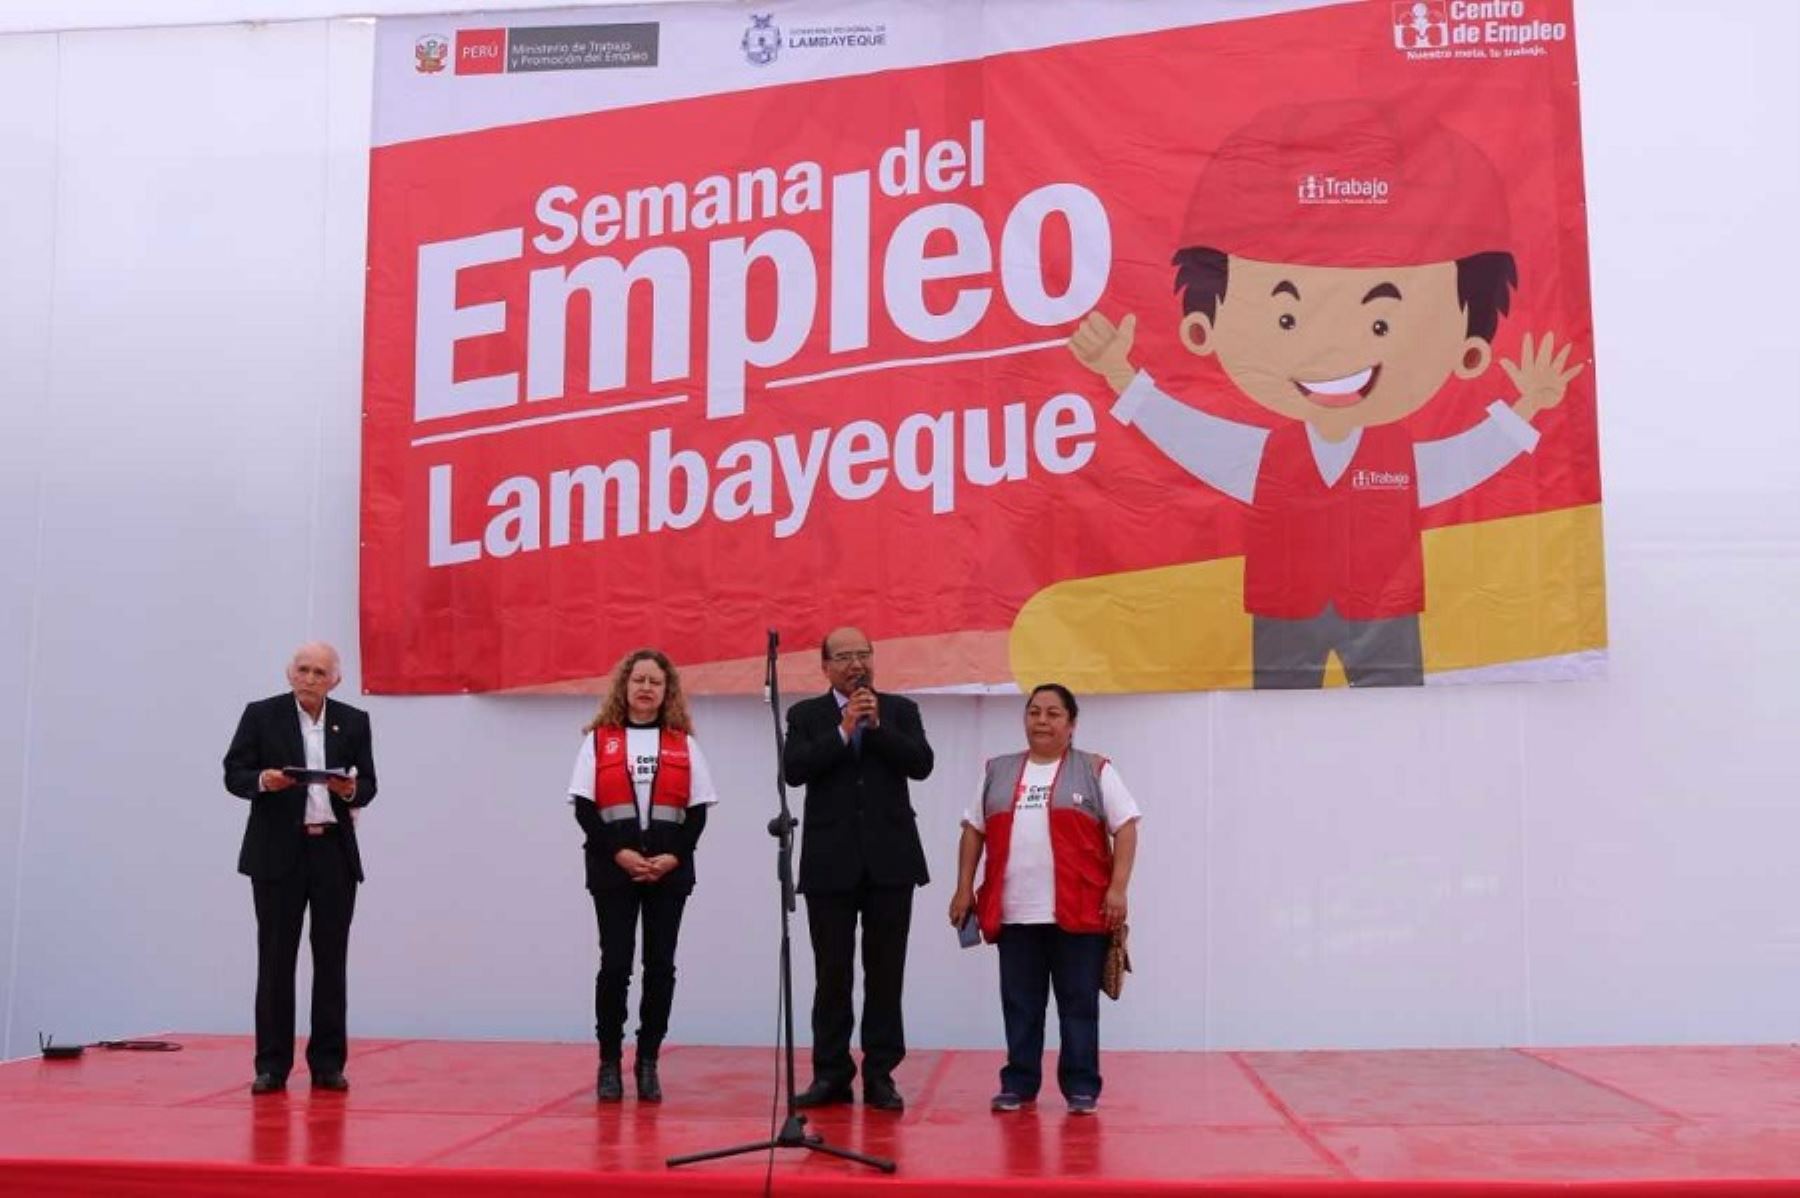 El Centro de Empleo de la Gerencia Regional de Trabajo y Promoción del Empleo y el Ministerio de Trabajo ofrecen 2,500 oportunidades laborales en la Semana del Empleo, que se inauguró en la Casa Comunal de la Juventud de la ciudad de Chiclayo, en la región Lambayeque.